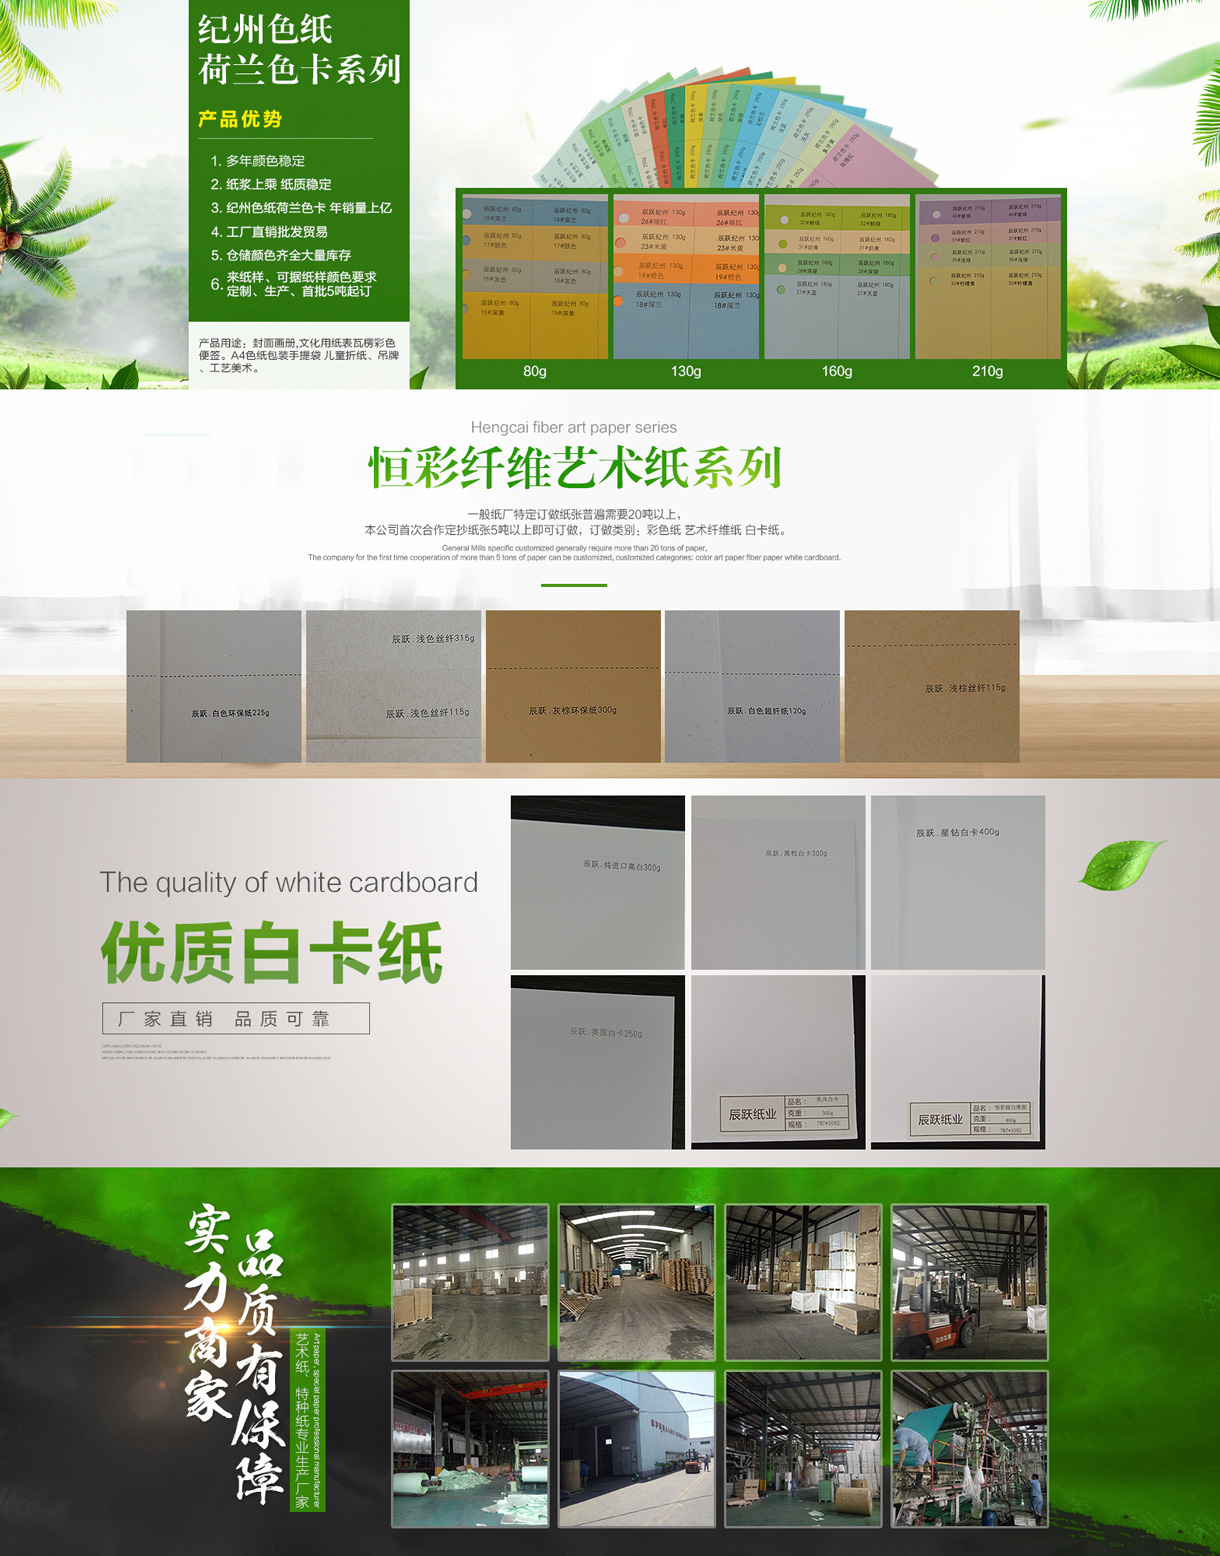 上海辰跃纸业有限公司-中国国际包装展-中国包装容器展